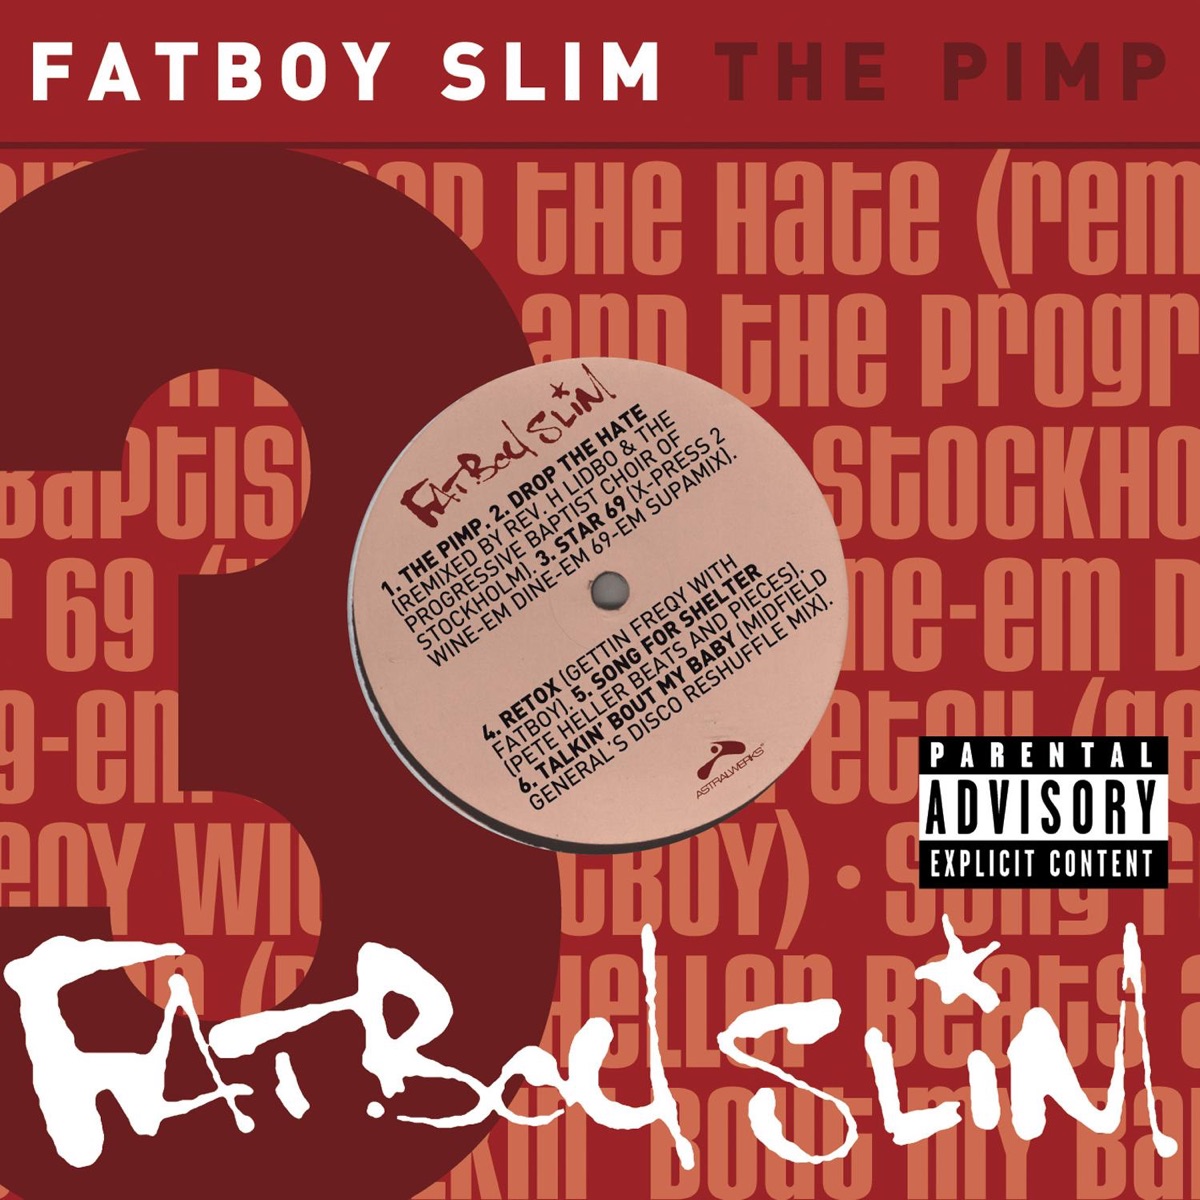 Illuminati - Album by Fatboy Slim - Apple Music